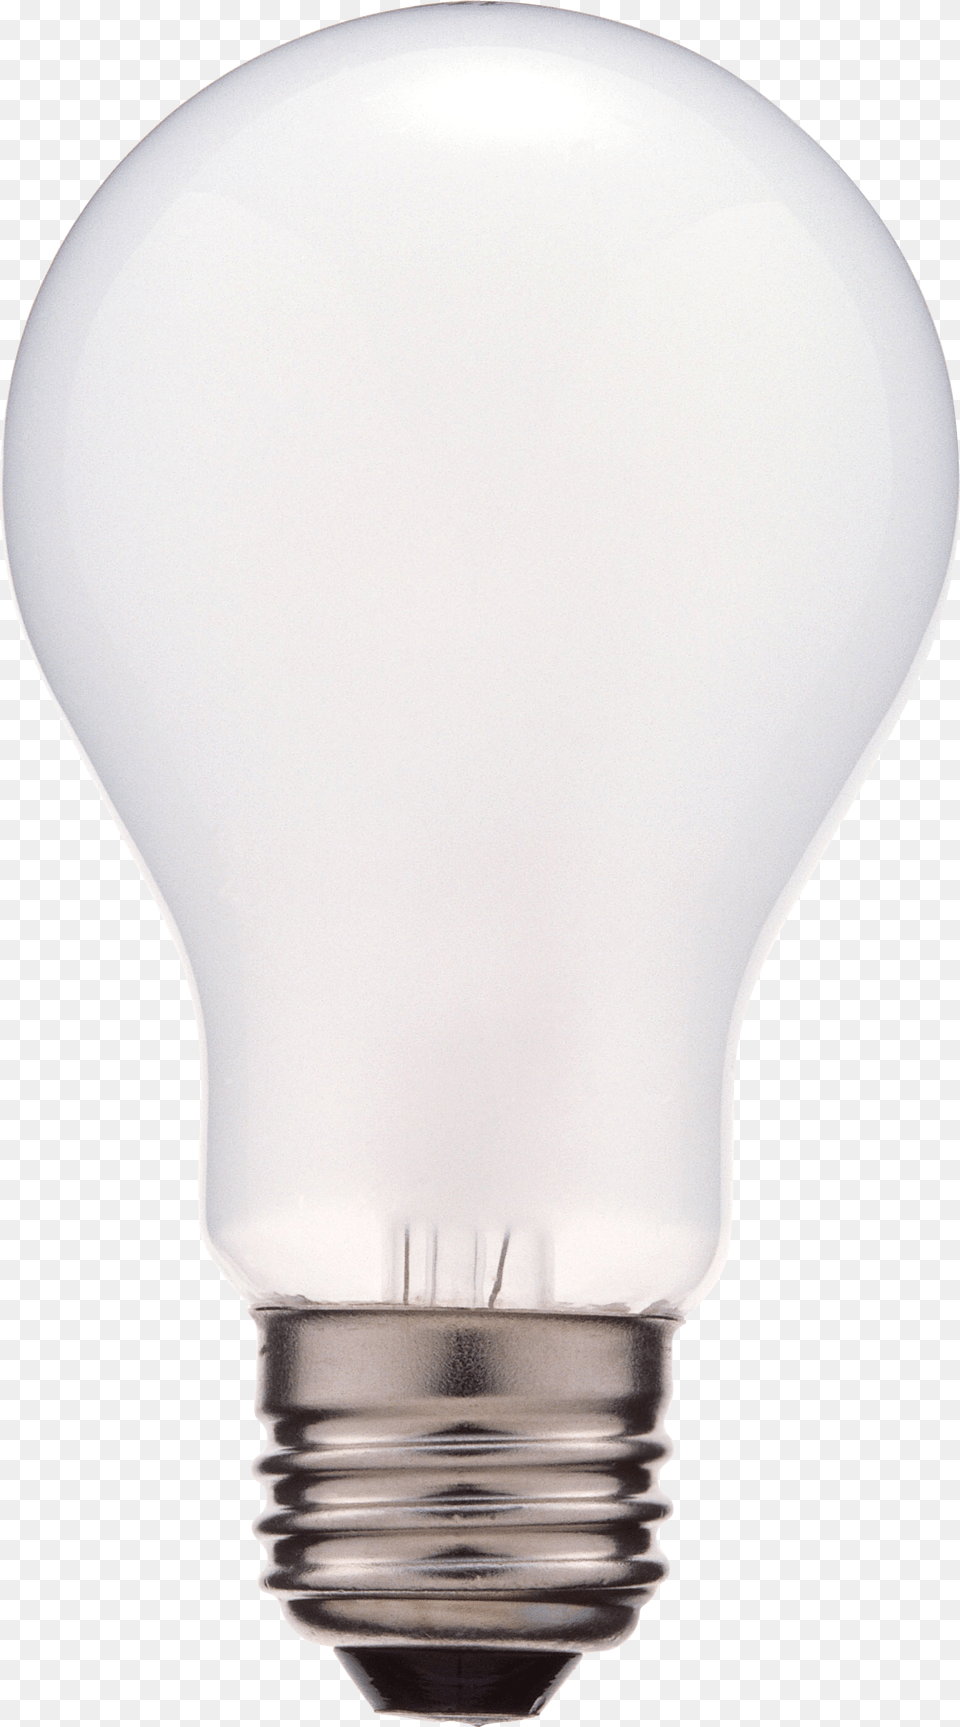 Lamp, Light, Lightbulb Png Image